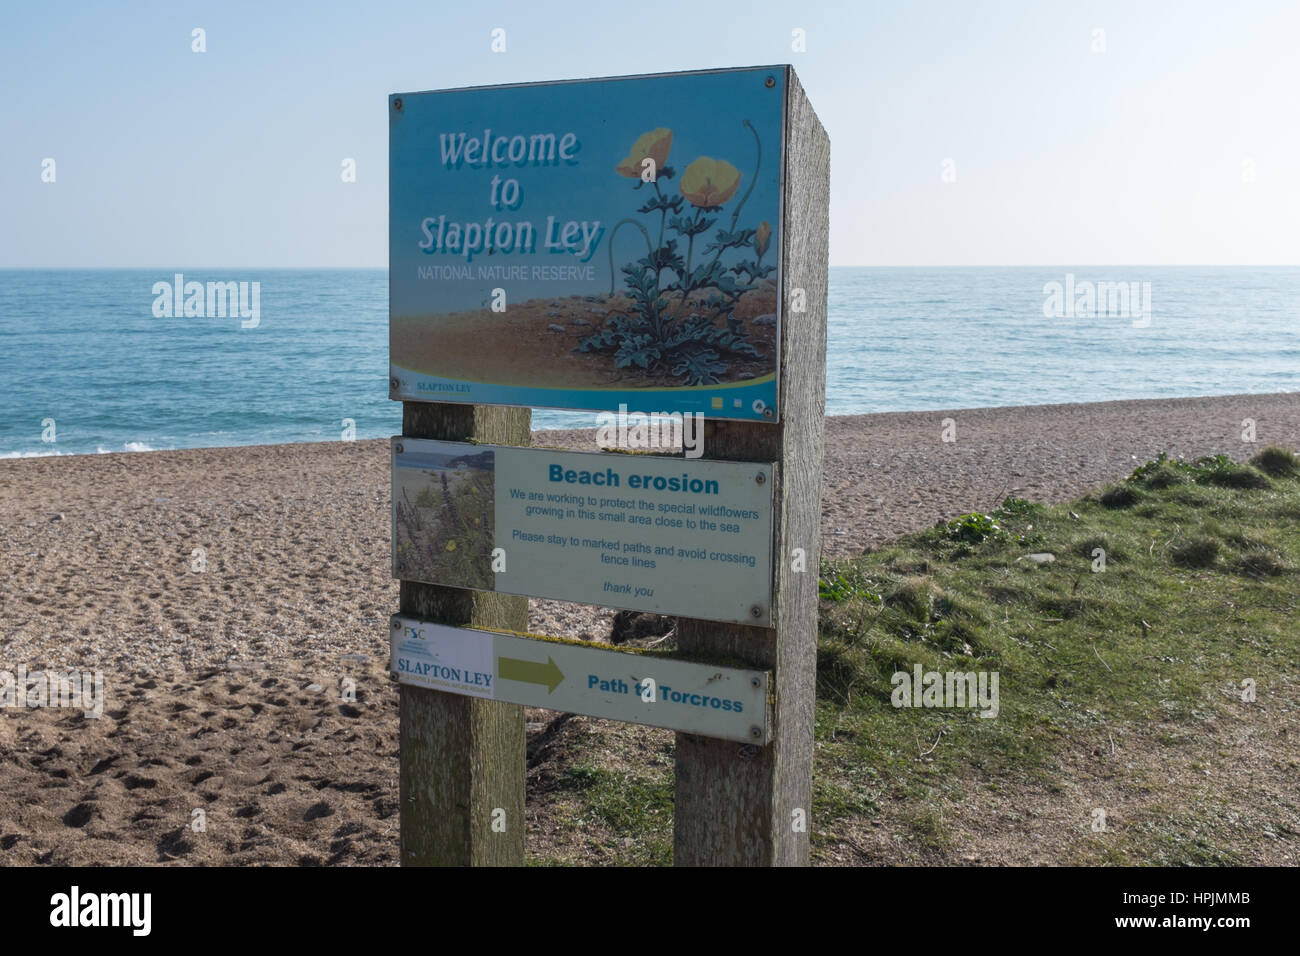 Willkommen Sie bei Slapton Ley National Nature Reserve Zeichen am Strand in der Nähe von Torcross dem Strand Erosion leidet Stockfoto